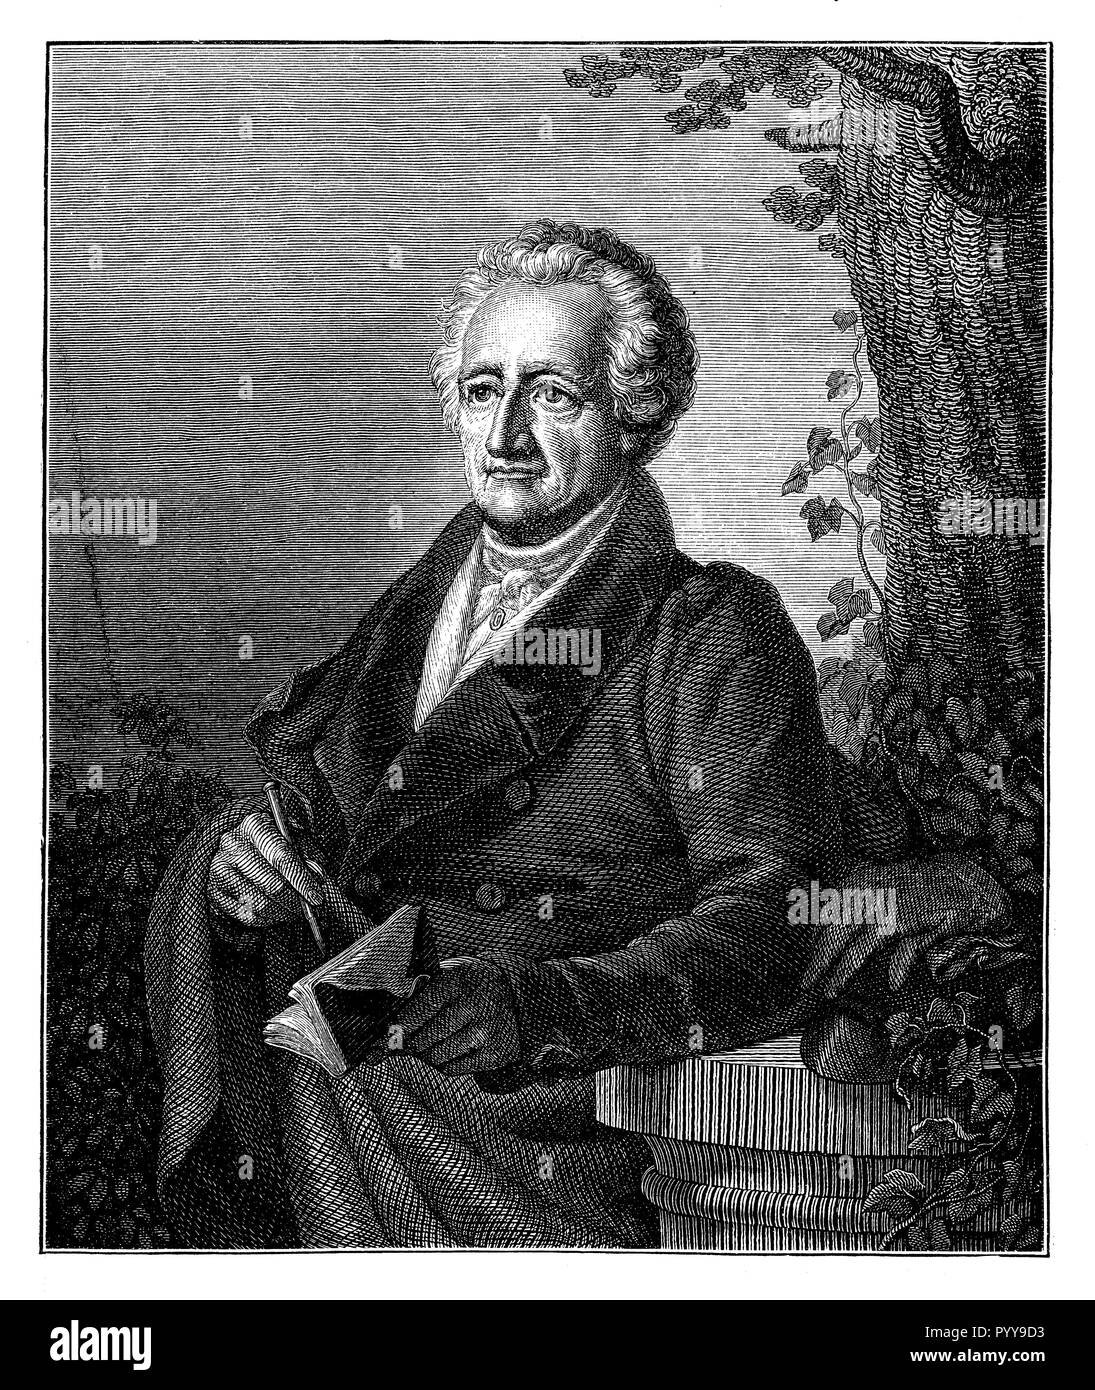 Goethe, Johann Wolfgang von (Francoforte sul Meno 1749 - Weimar 1832), nobilitata nel 1782, il poeta tedesco e naturalista. Goethe nel suo ottantatreesimo anno di vita, dopo la vita, segnata e incisa da C. A. Schwerdgeburth. Weimar 1832, C. A. Schwerdgeburth 1881 Foto Stock